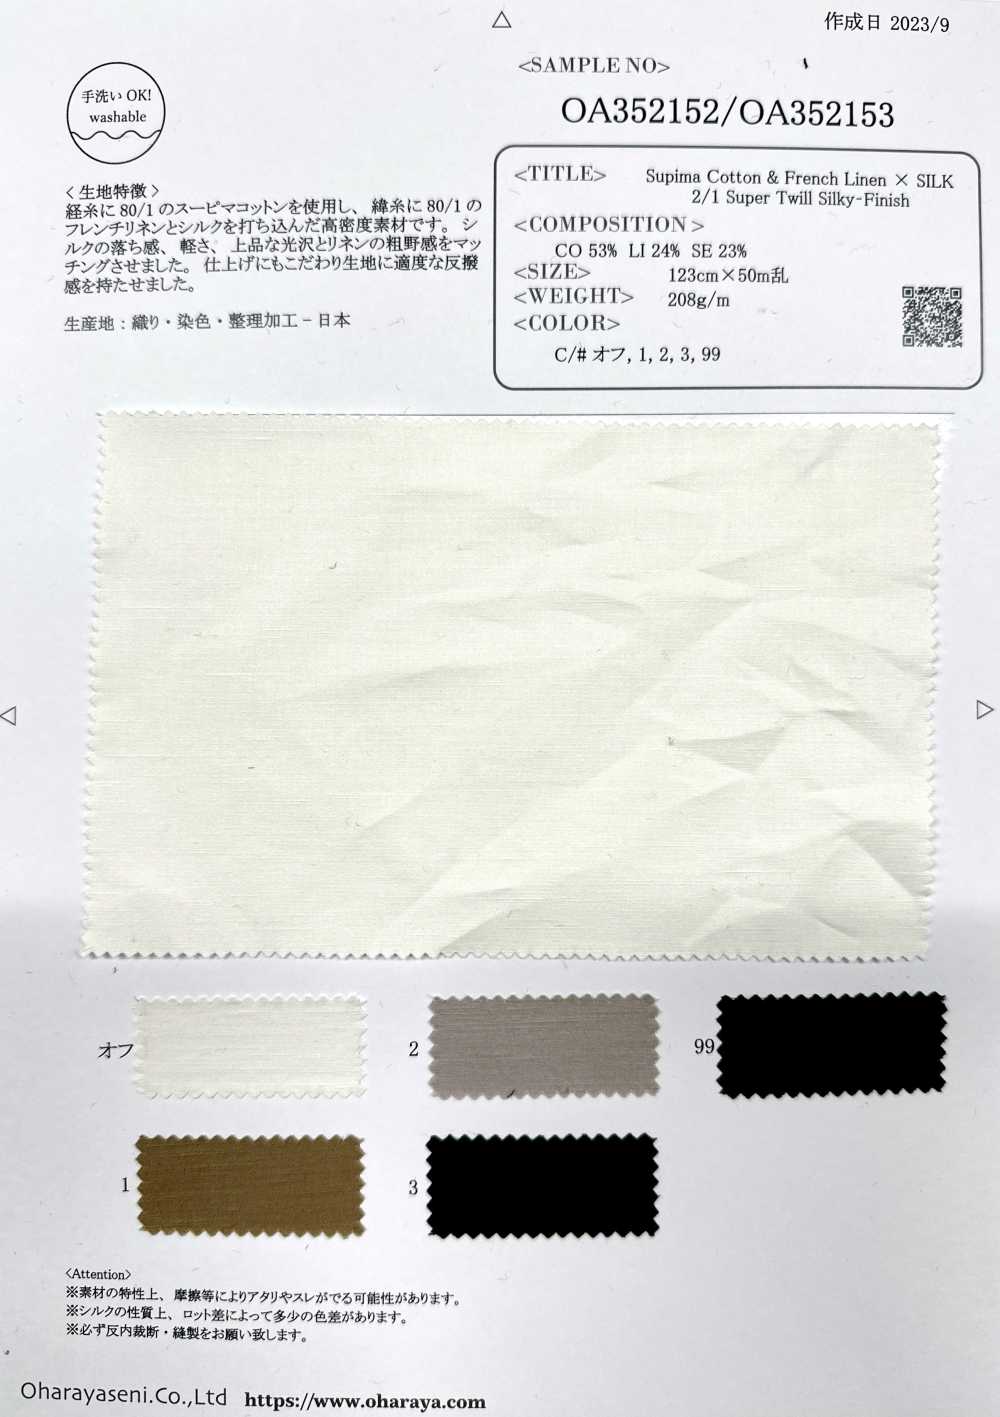 OA352153 Supima Cotton & Linen Pháp × SILK 2/1 Vải Chéo Siêu Mềm Mượt Oharayaseni